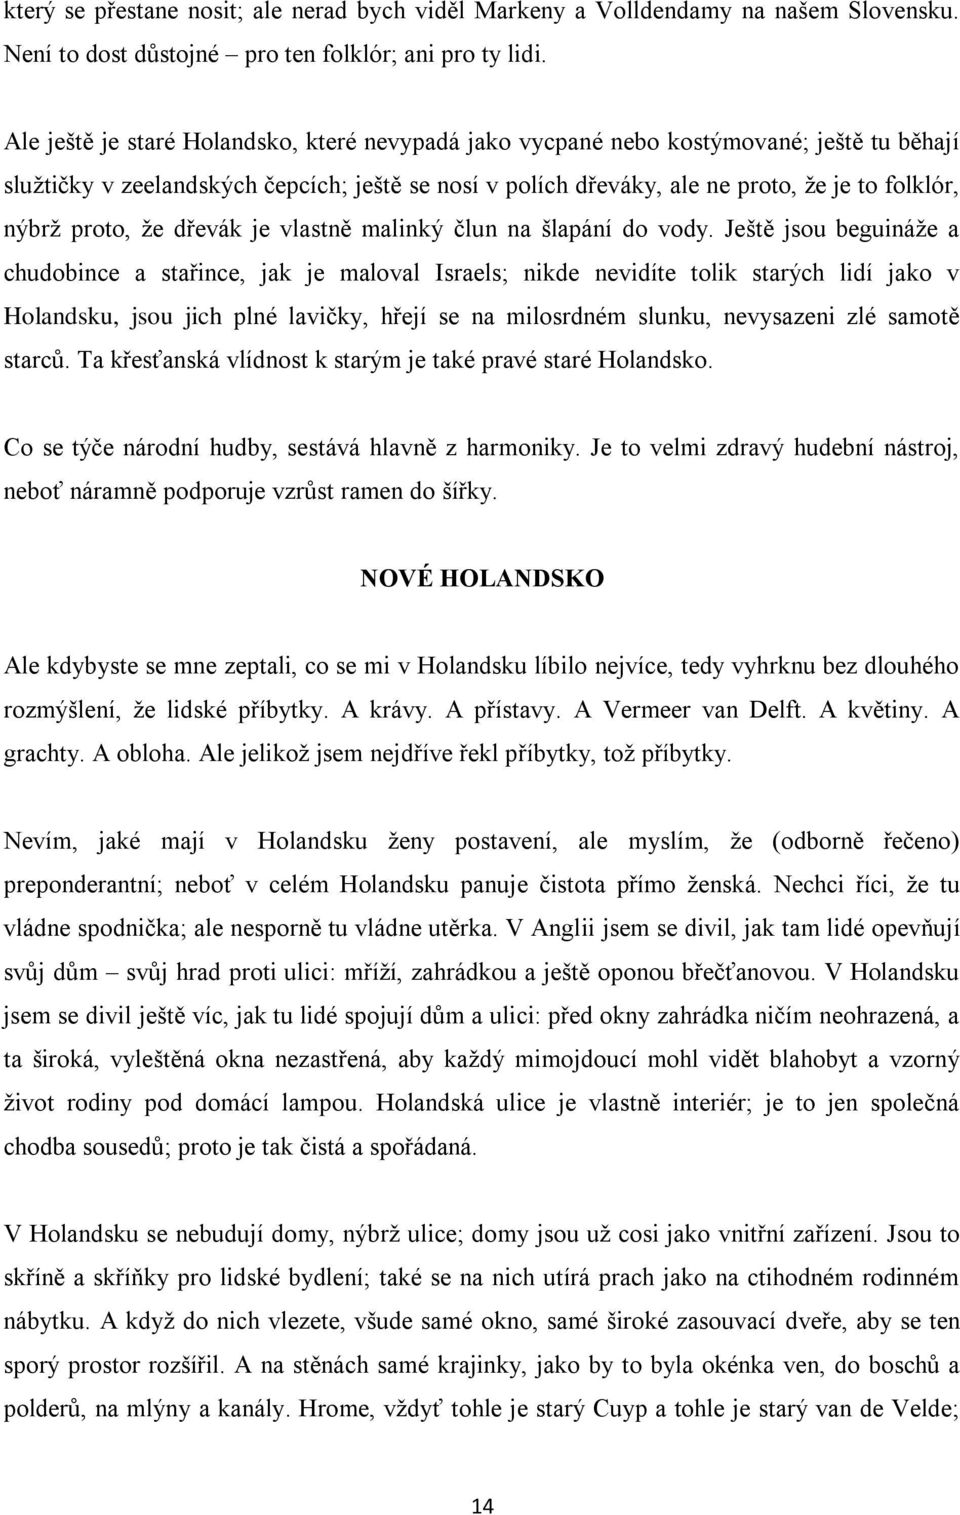 KAREL ČAPEK OBRÁZKY Z HOLANDSKA 1 - PDF Stažení zdarma